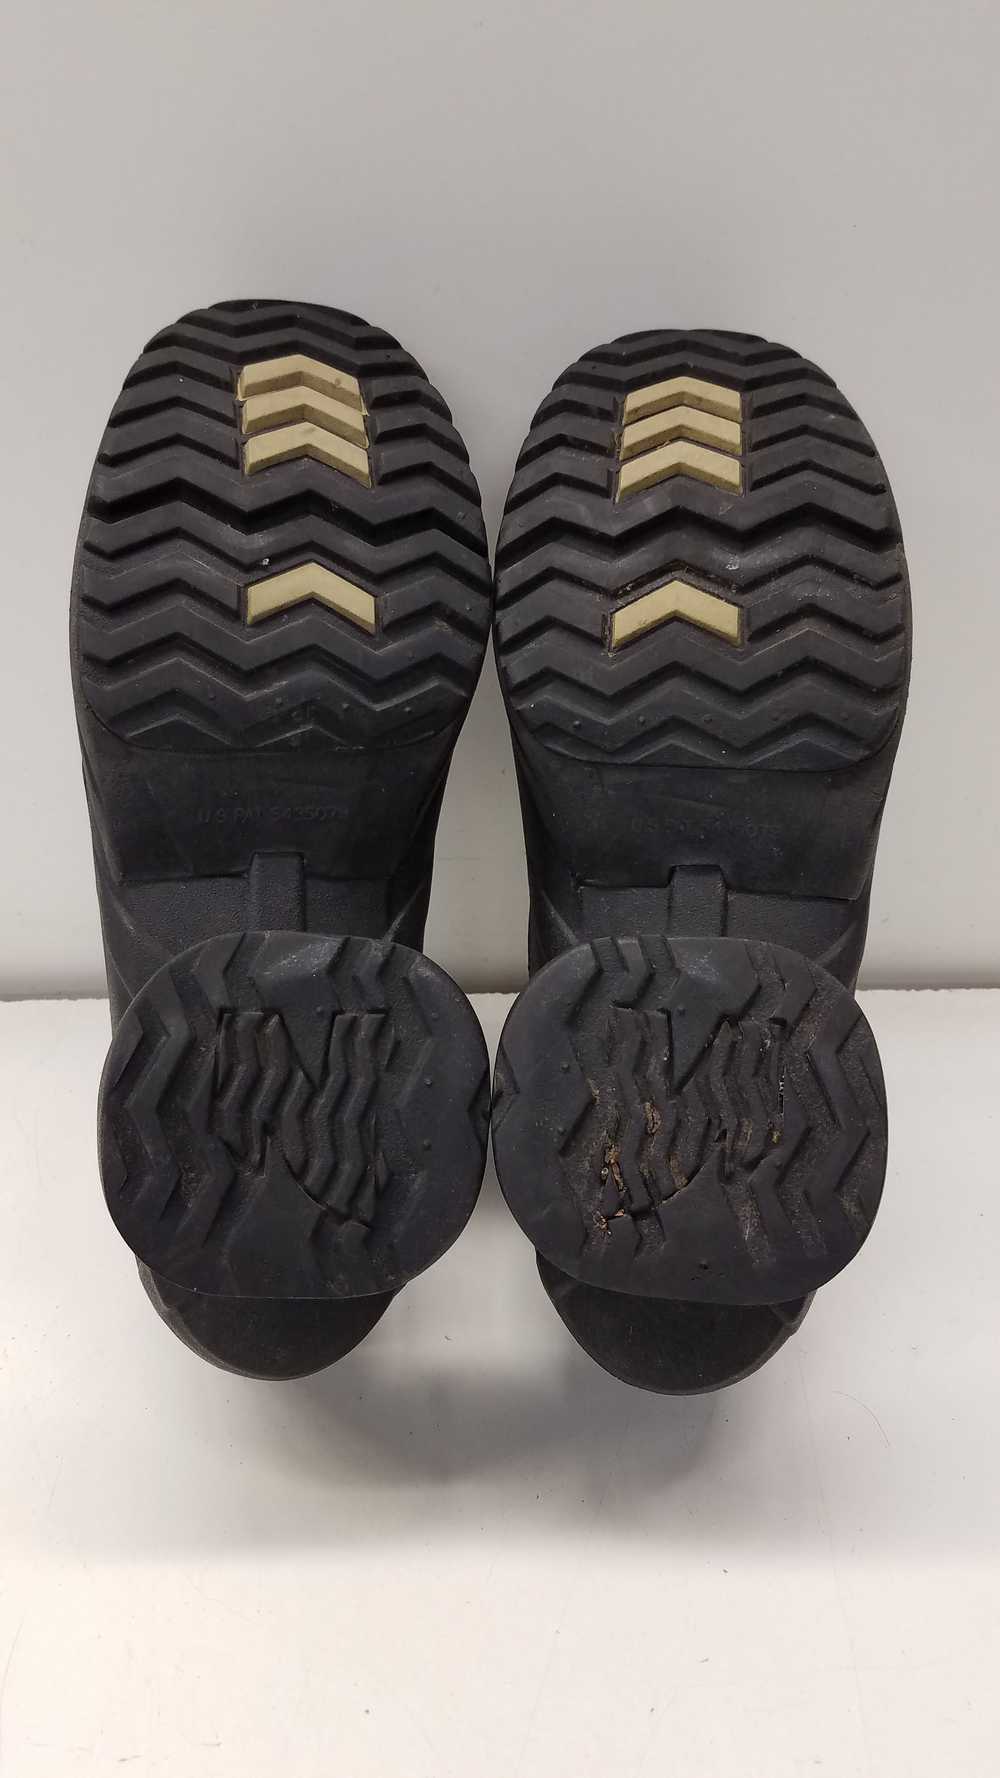 Z-Coil Pain Relief Black Mesh Shoes Men's Size 14 - image 5